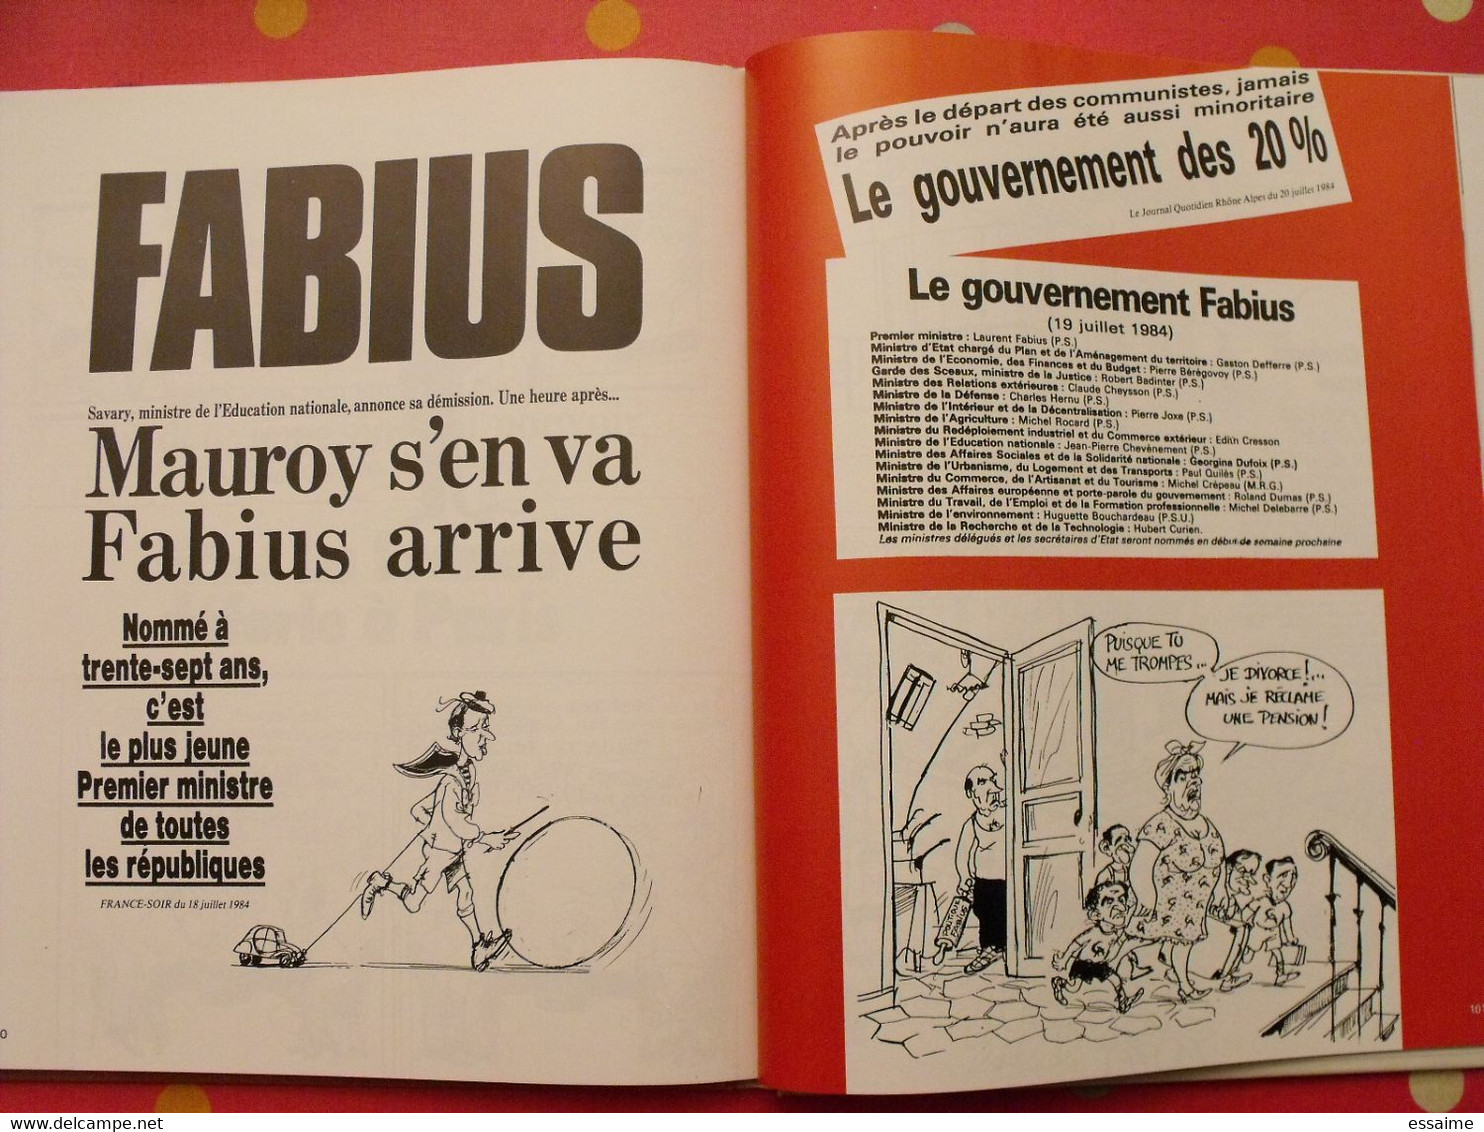 Calvi & auclert. L'addition. humour. dessins politiques. Mitterrand Marchais Giscard Rocard Fabius. 1985 le pré aux cler